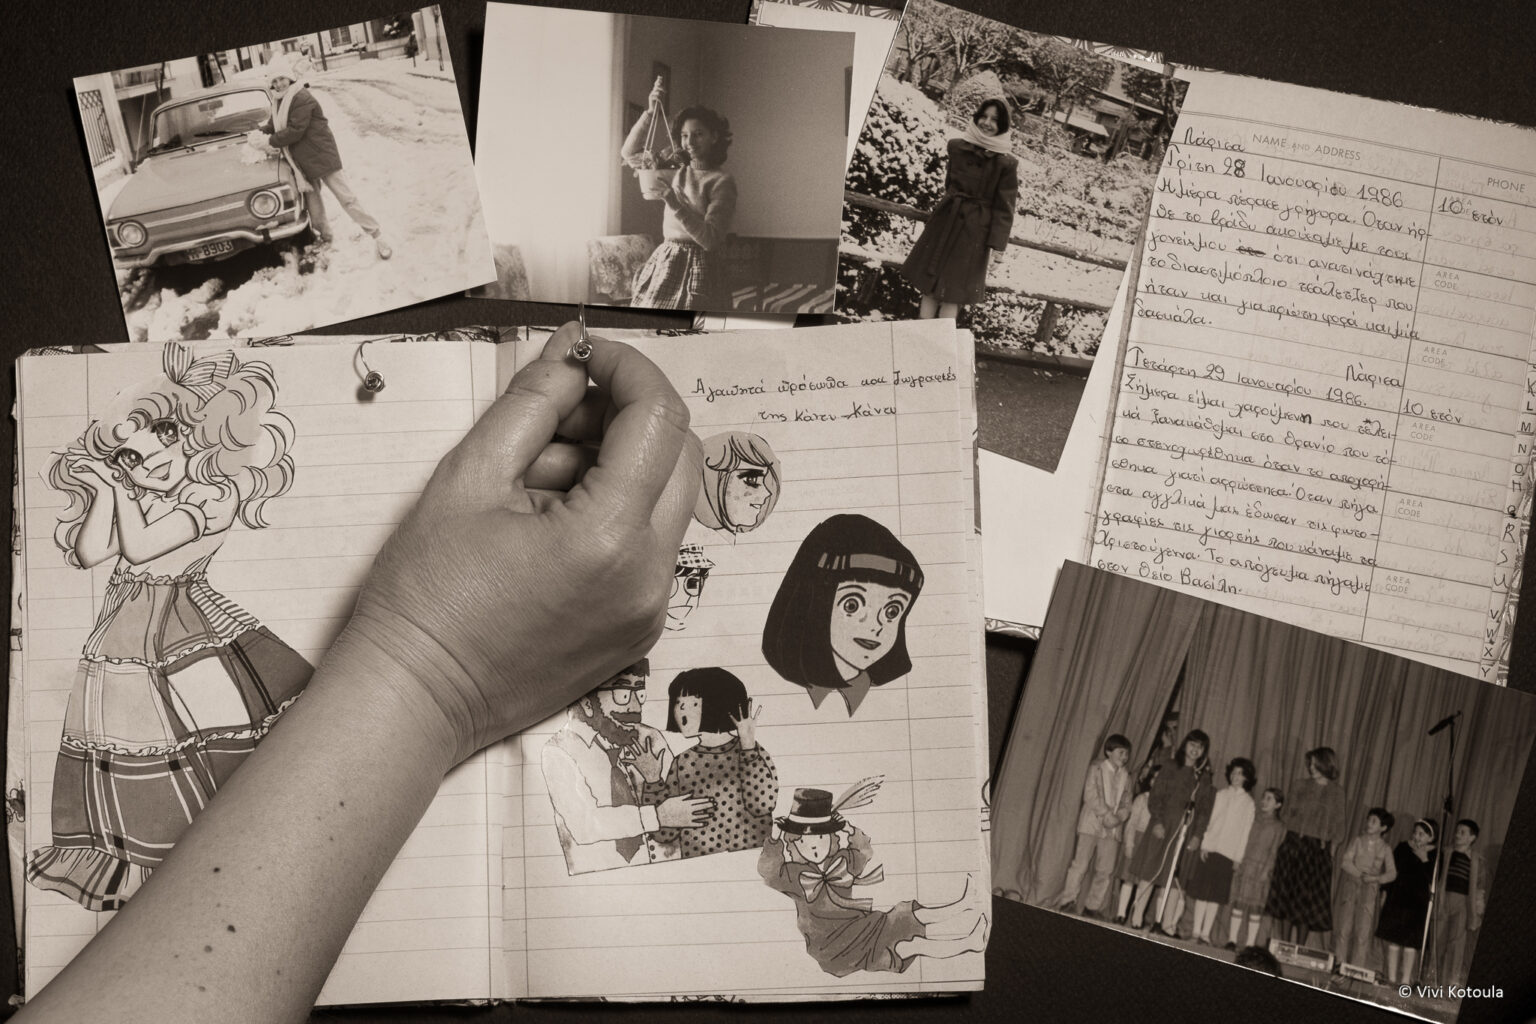 Μέσα από παλιές φωτογραφίες, αντικείμενα, συλλογές και γράμματα, ξετυλίγονται αναμνήσεις από την παιδική και εφηβική ηλικία - Vivi Kotoula